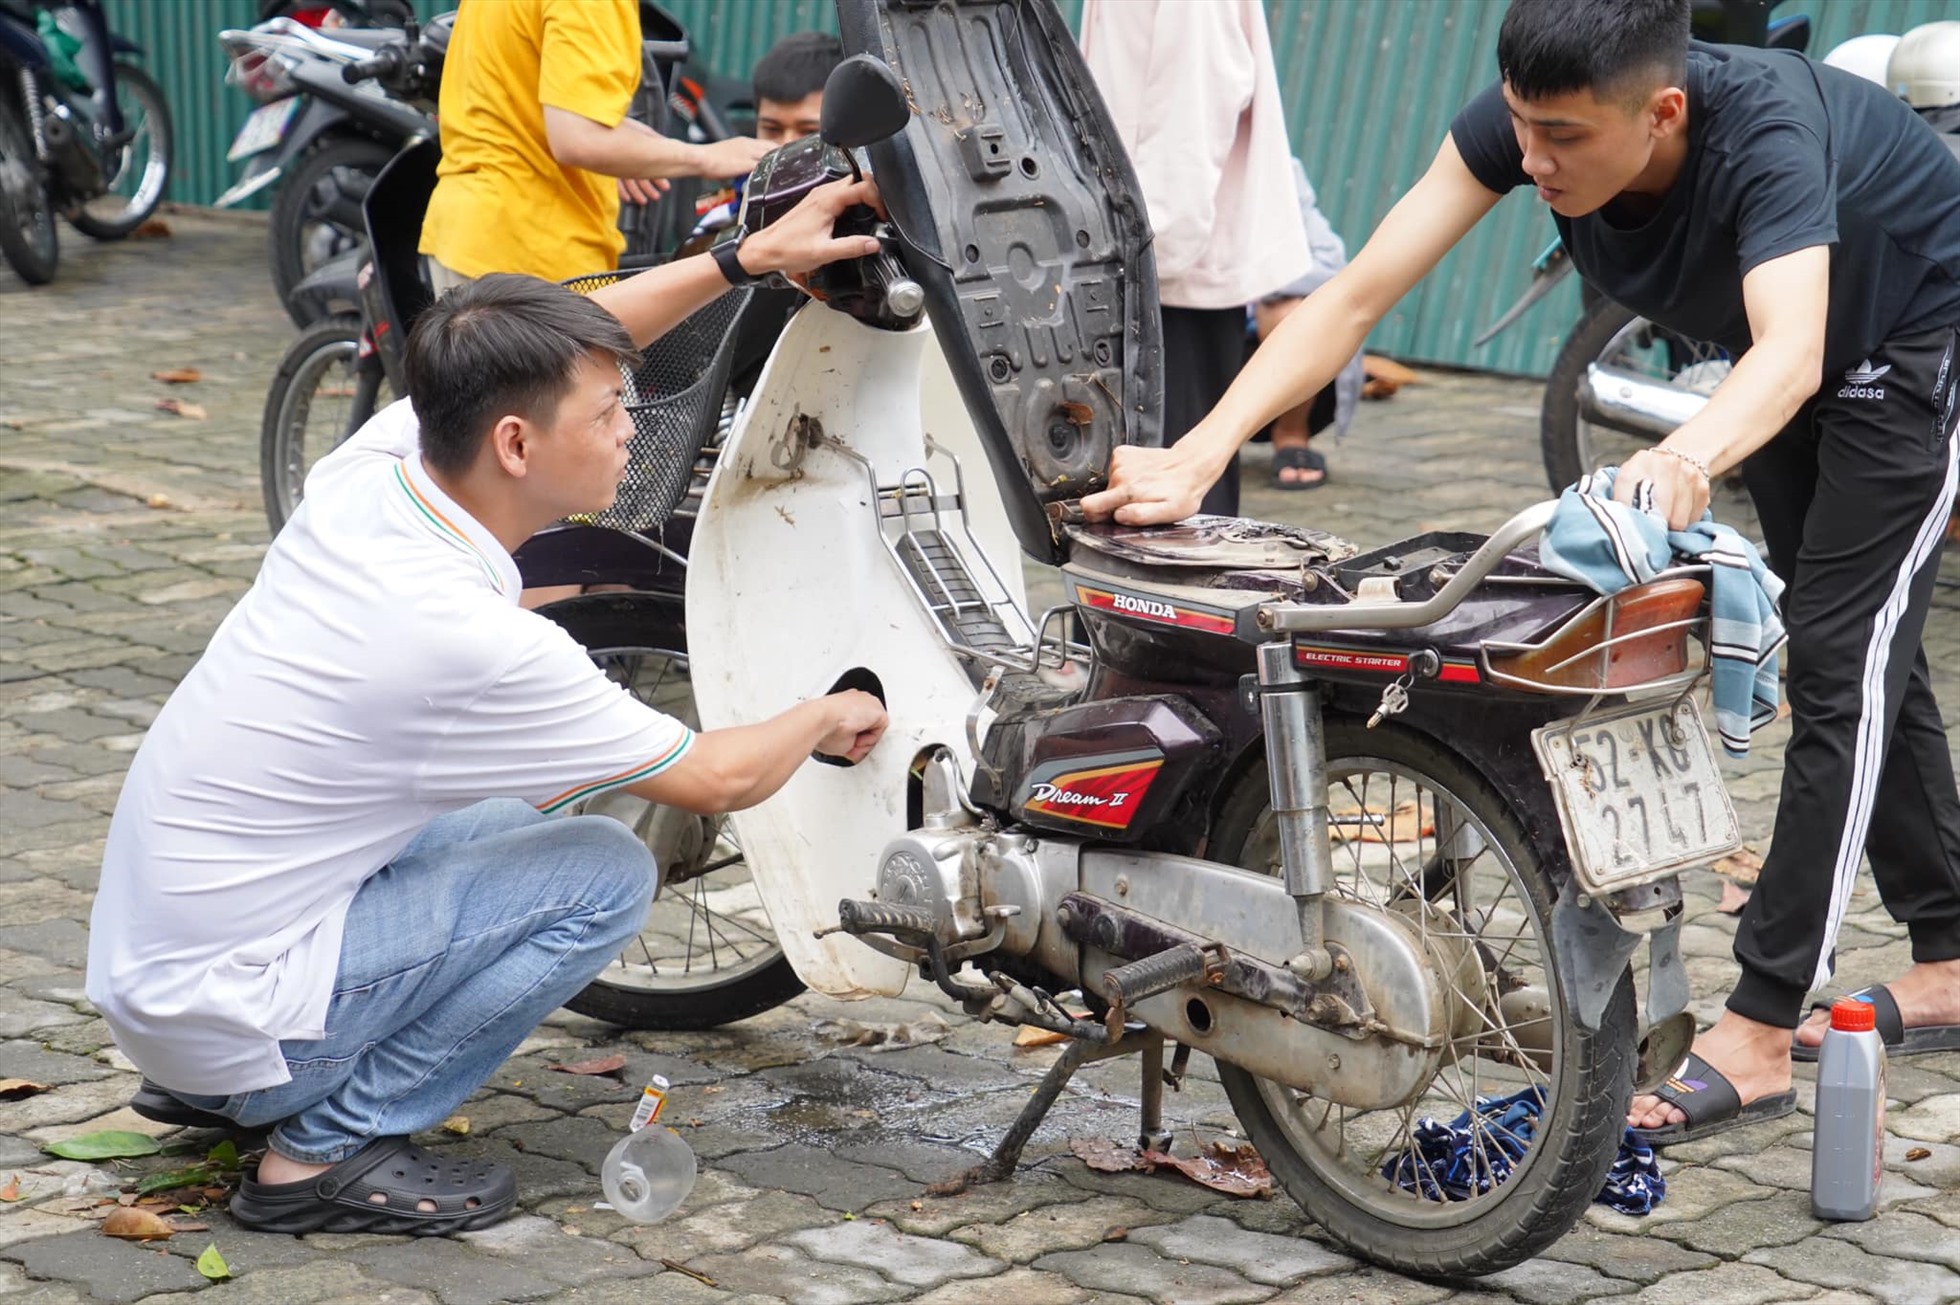 Bạn đang ở Đà Nẵng và cần sửa xe mà không biết nơi nào uy tín và chất lượng? Đừng lo lắng, bạn có thể đến với những thợ sửa xe miễn phí với tinh thần trách nhiệm và tận tâm để được họ giúp đỡ.